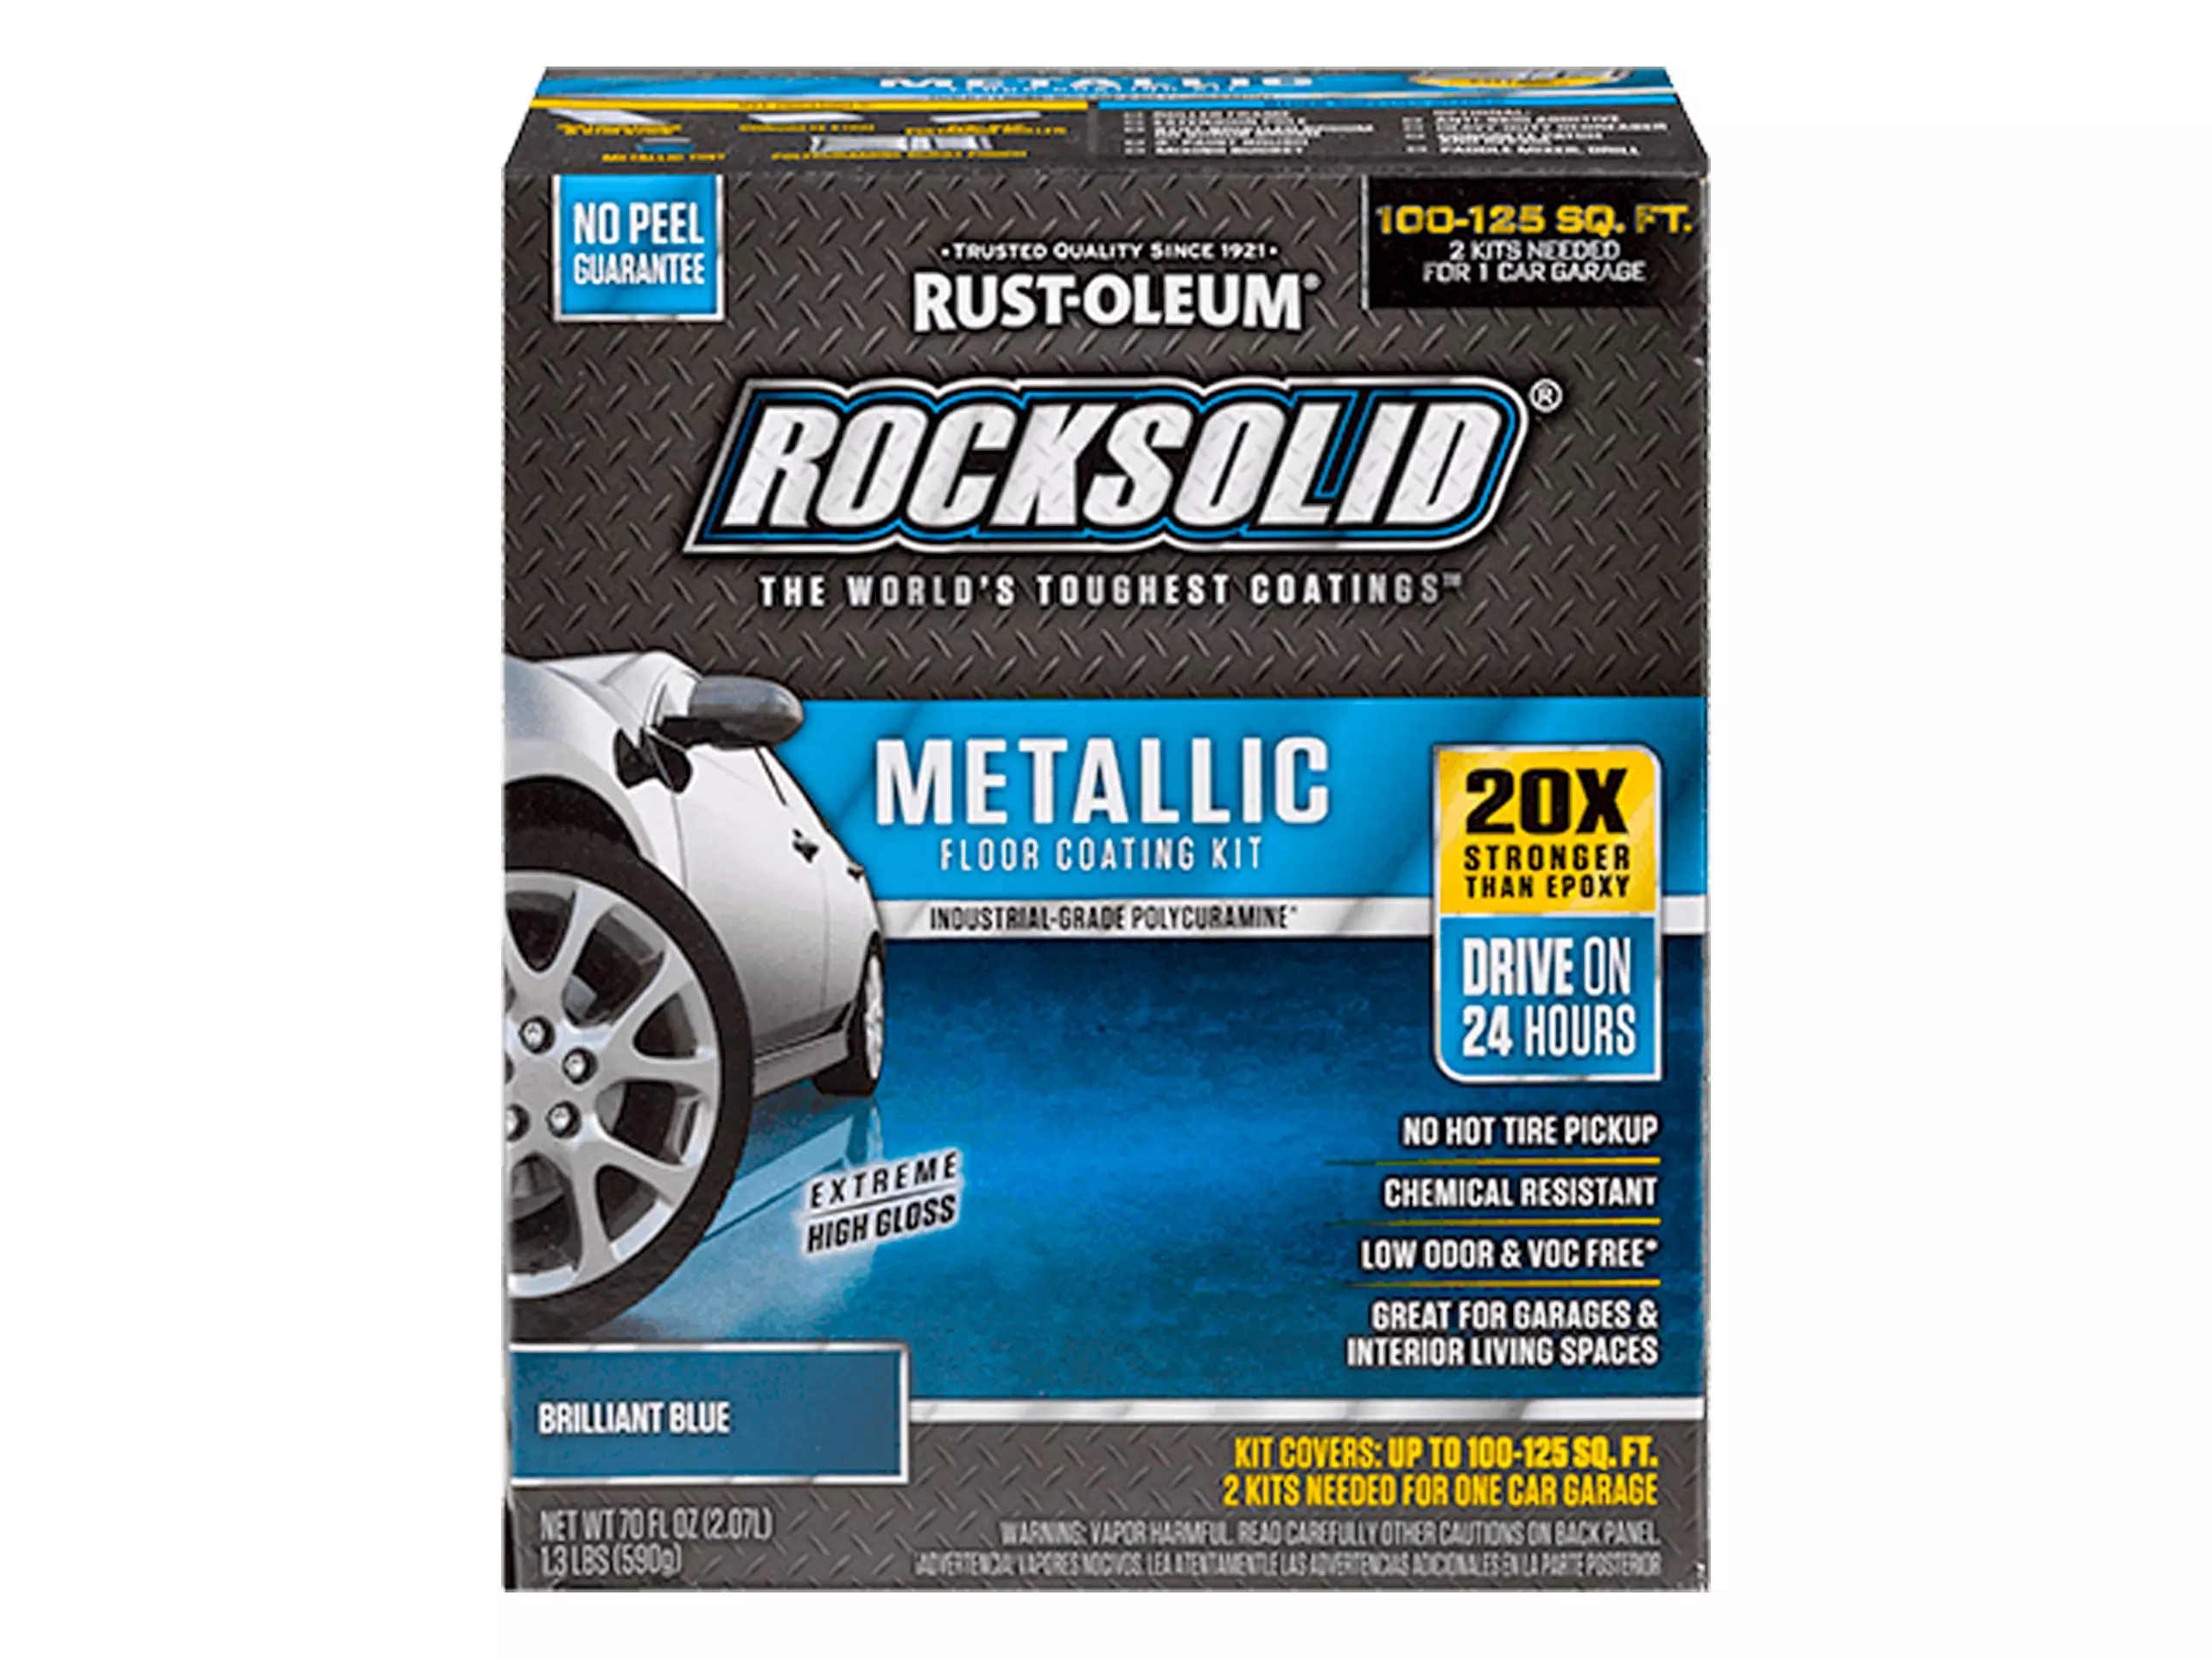 Rust-oleum® Rocksolid® Polycuramine® Metallic Floor Coating Kit- Brilliant Blue